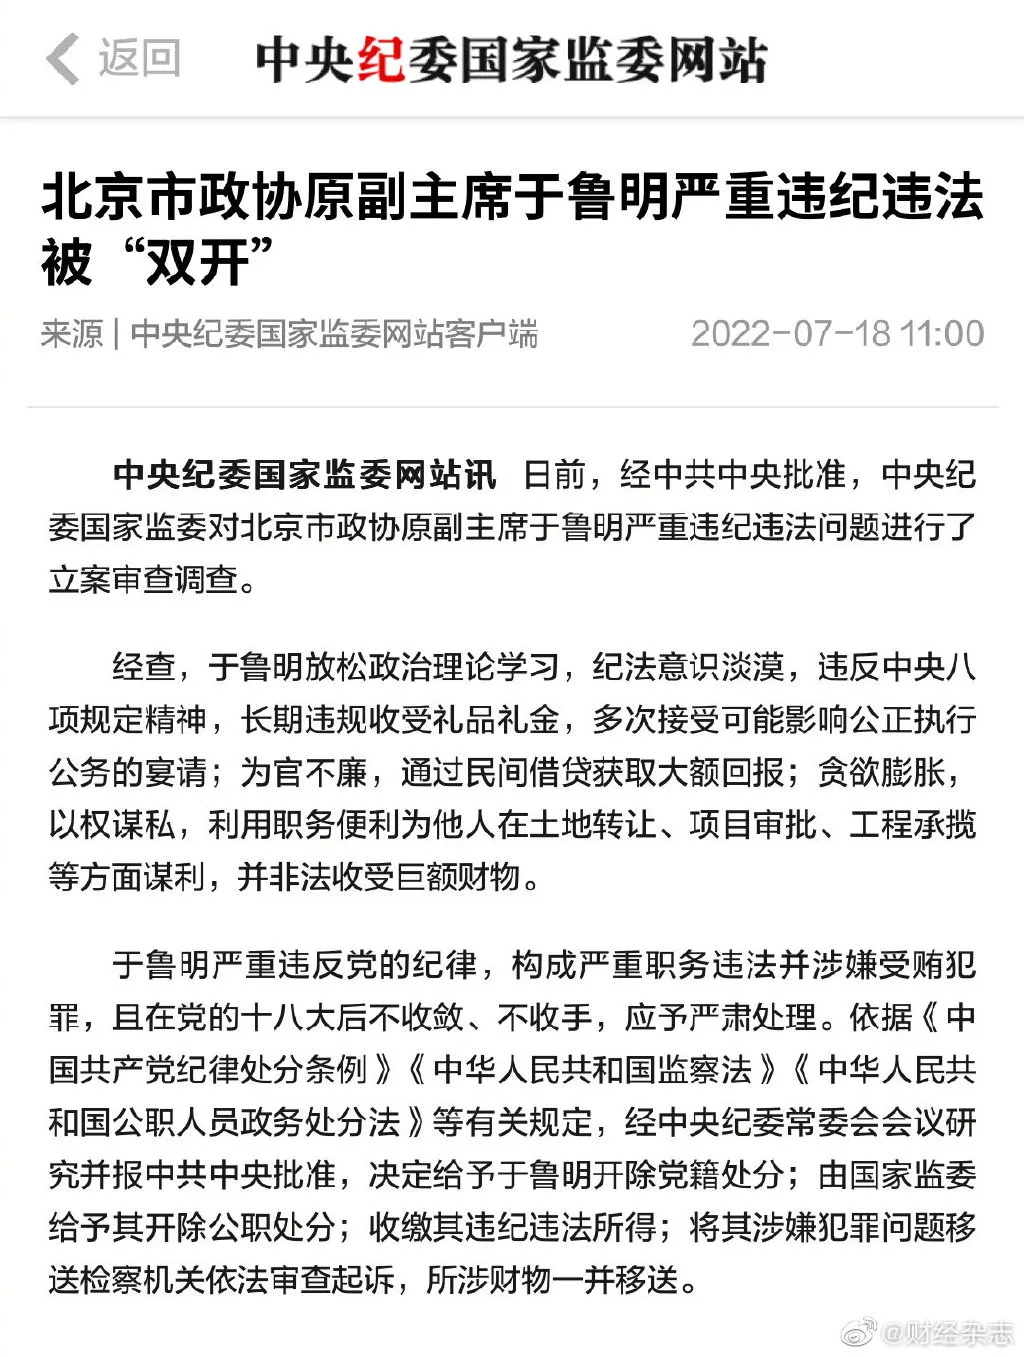 北京市政协原副主席于鲁明被双开 于鲁明被“双开” 被指通过民间借贷获取大额回报